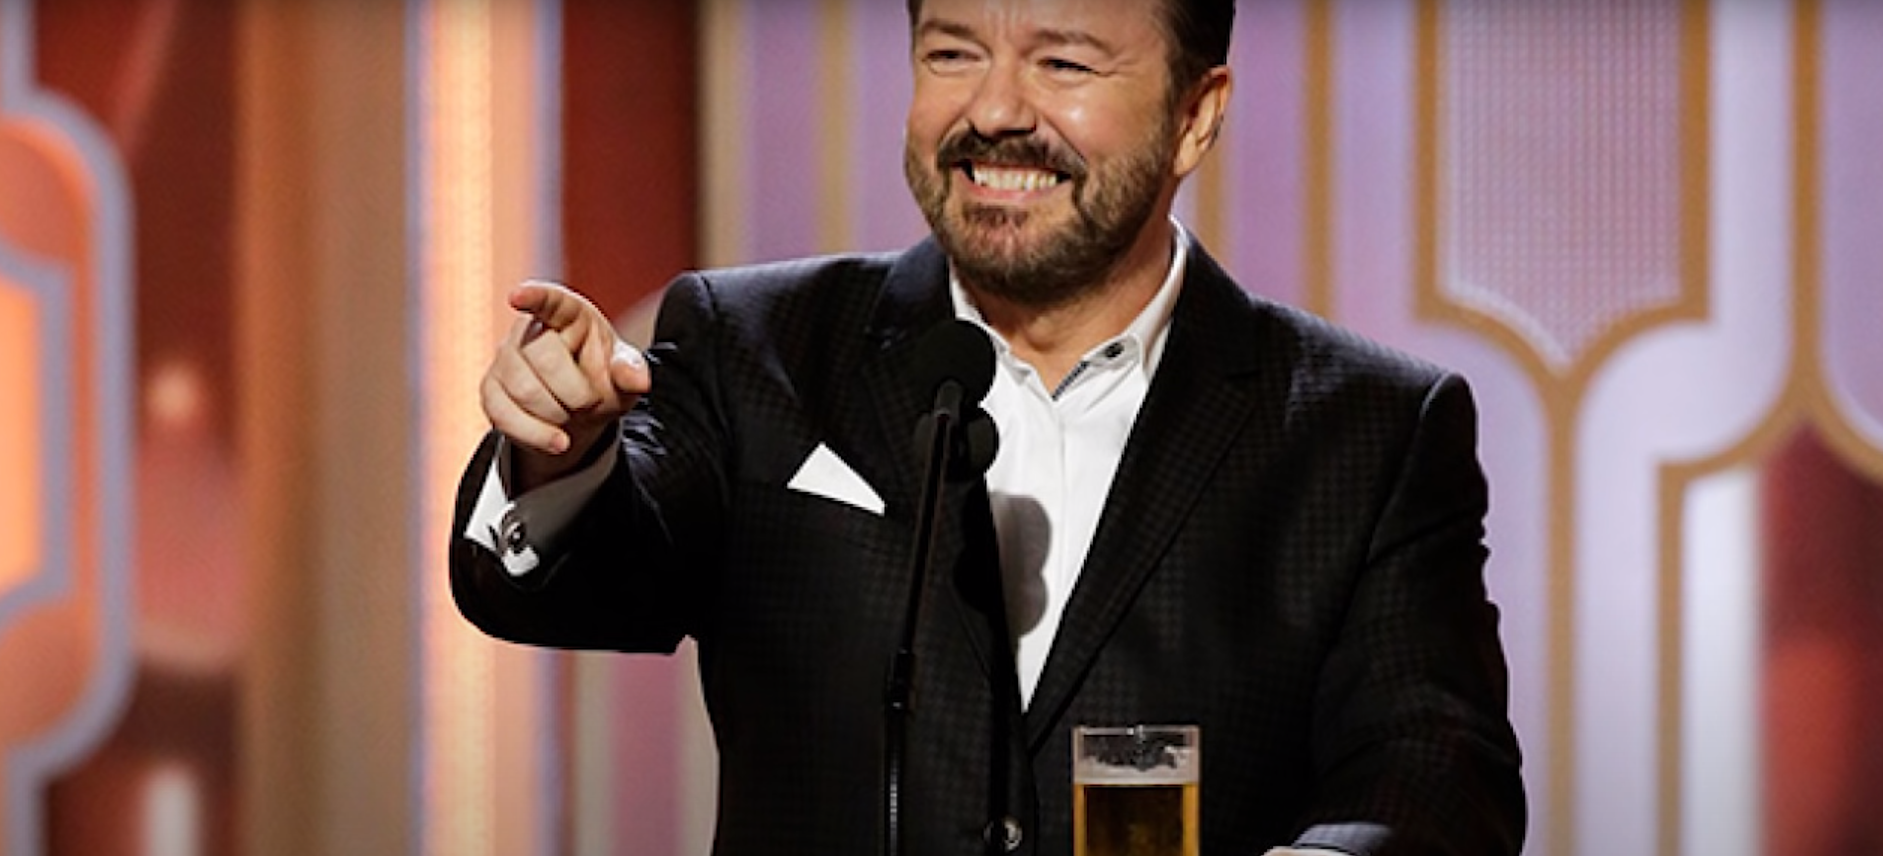 Ricky Gervais speech